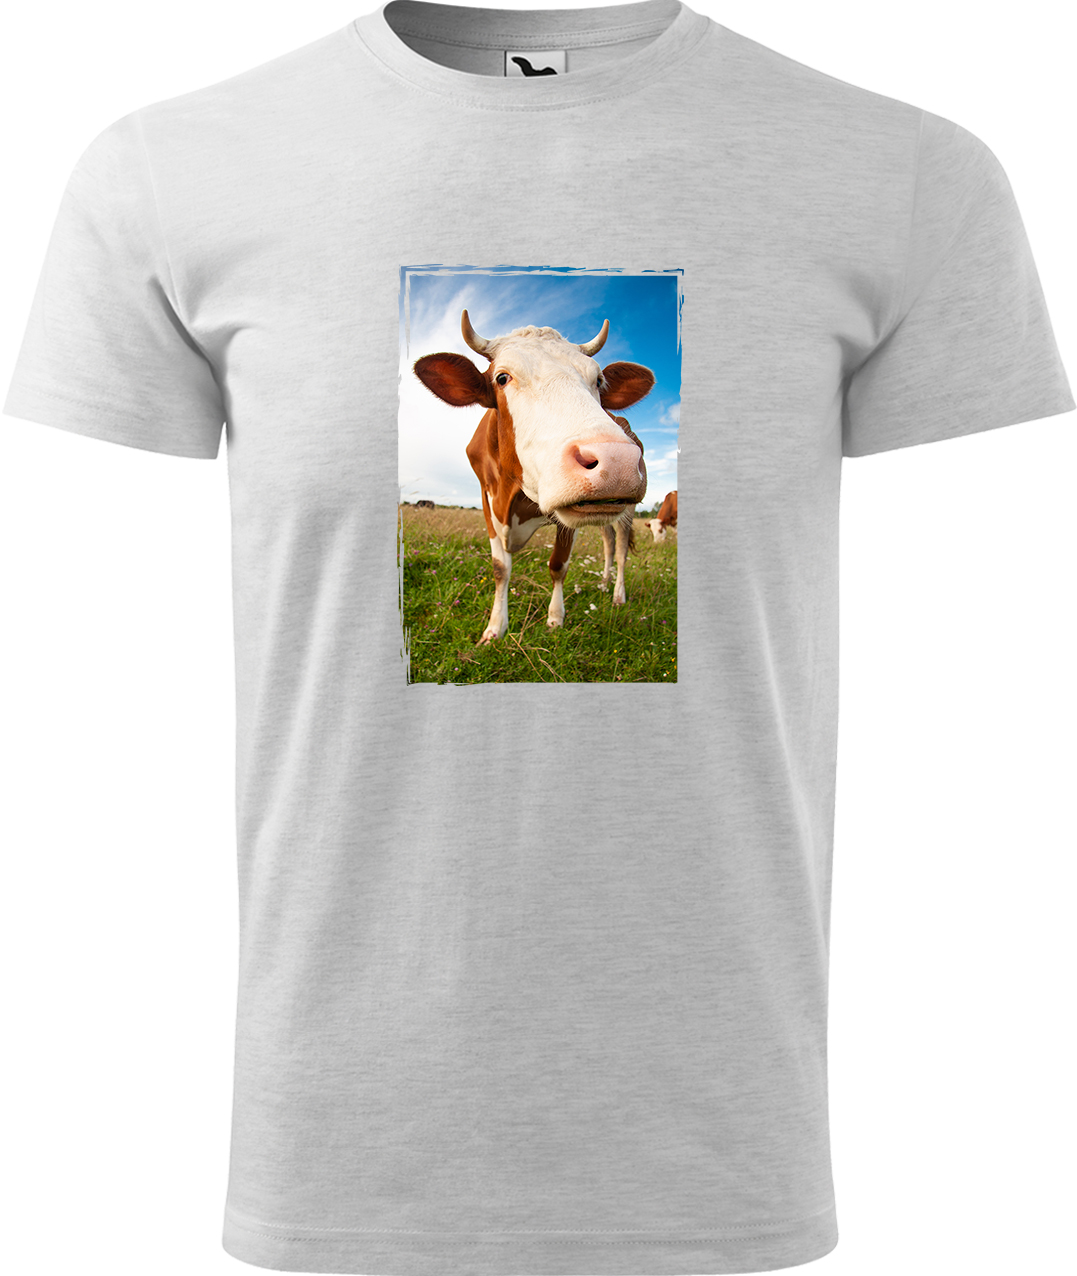 Pánské tričko s krávou - Na pastvě Velikost: XL, Barva: Světle šedý melír (03), Střih: pánský